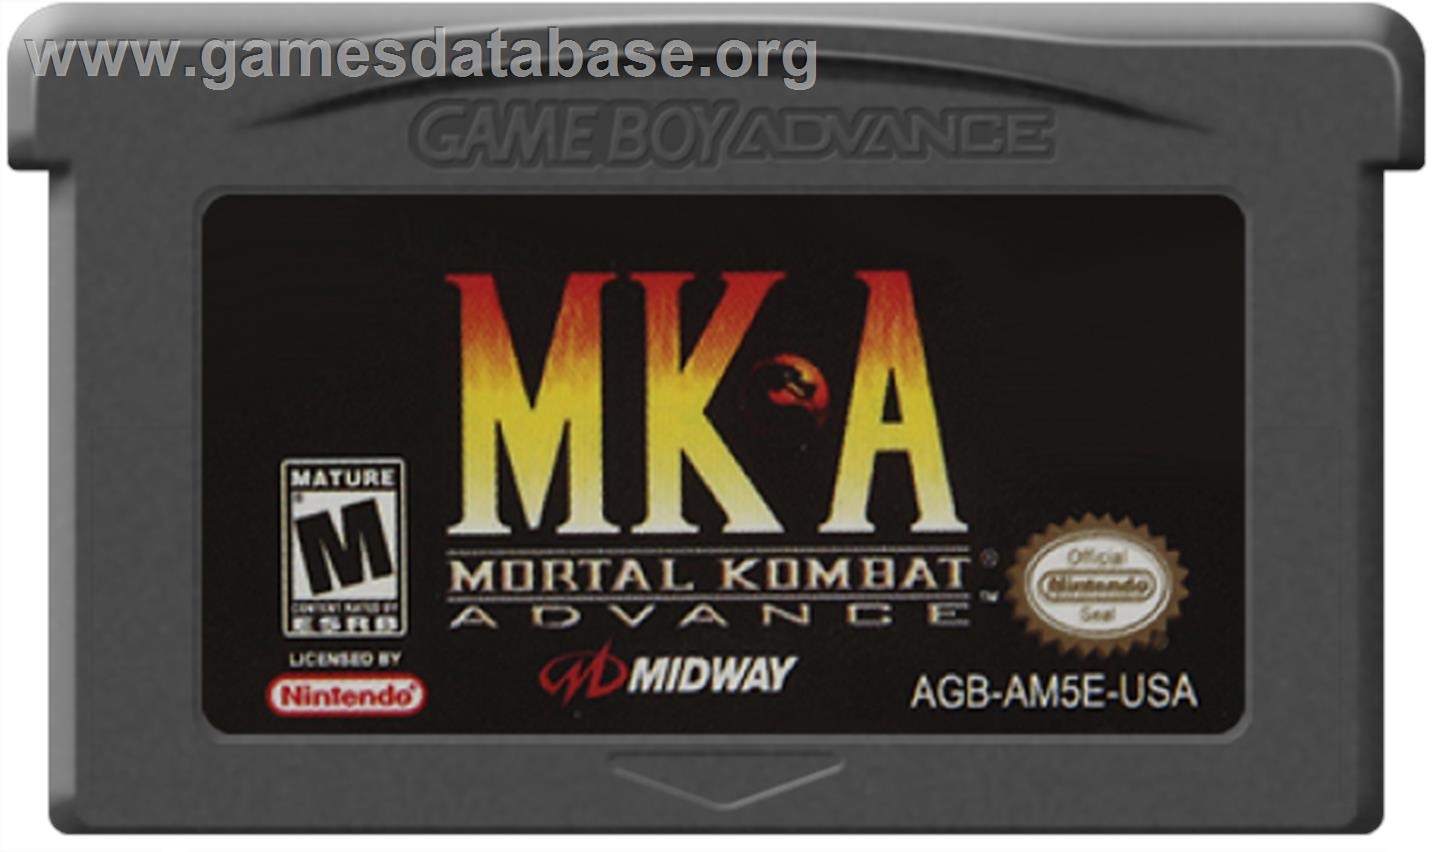 Mortal Kombat Advance - Nintendo Game Boy Advance - Artwork - Cartridge